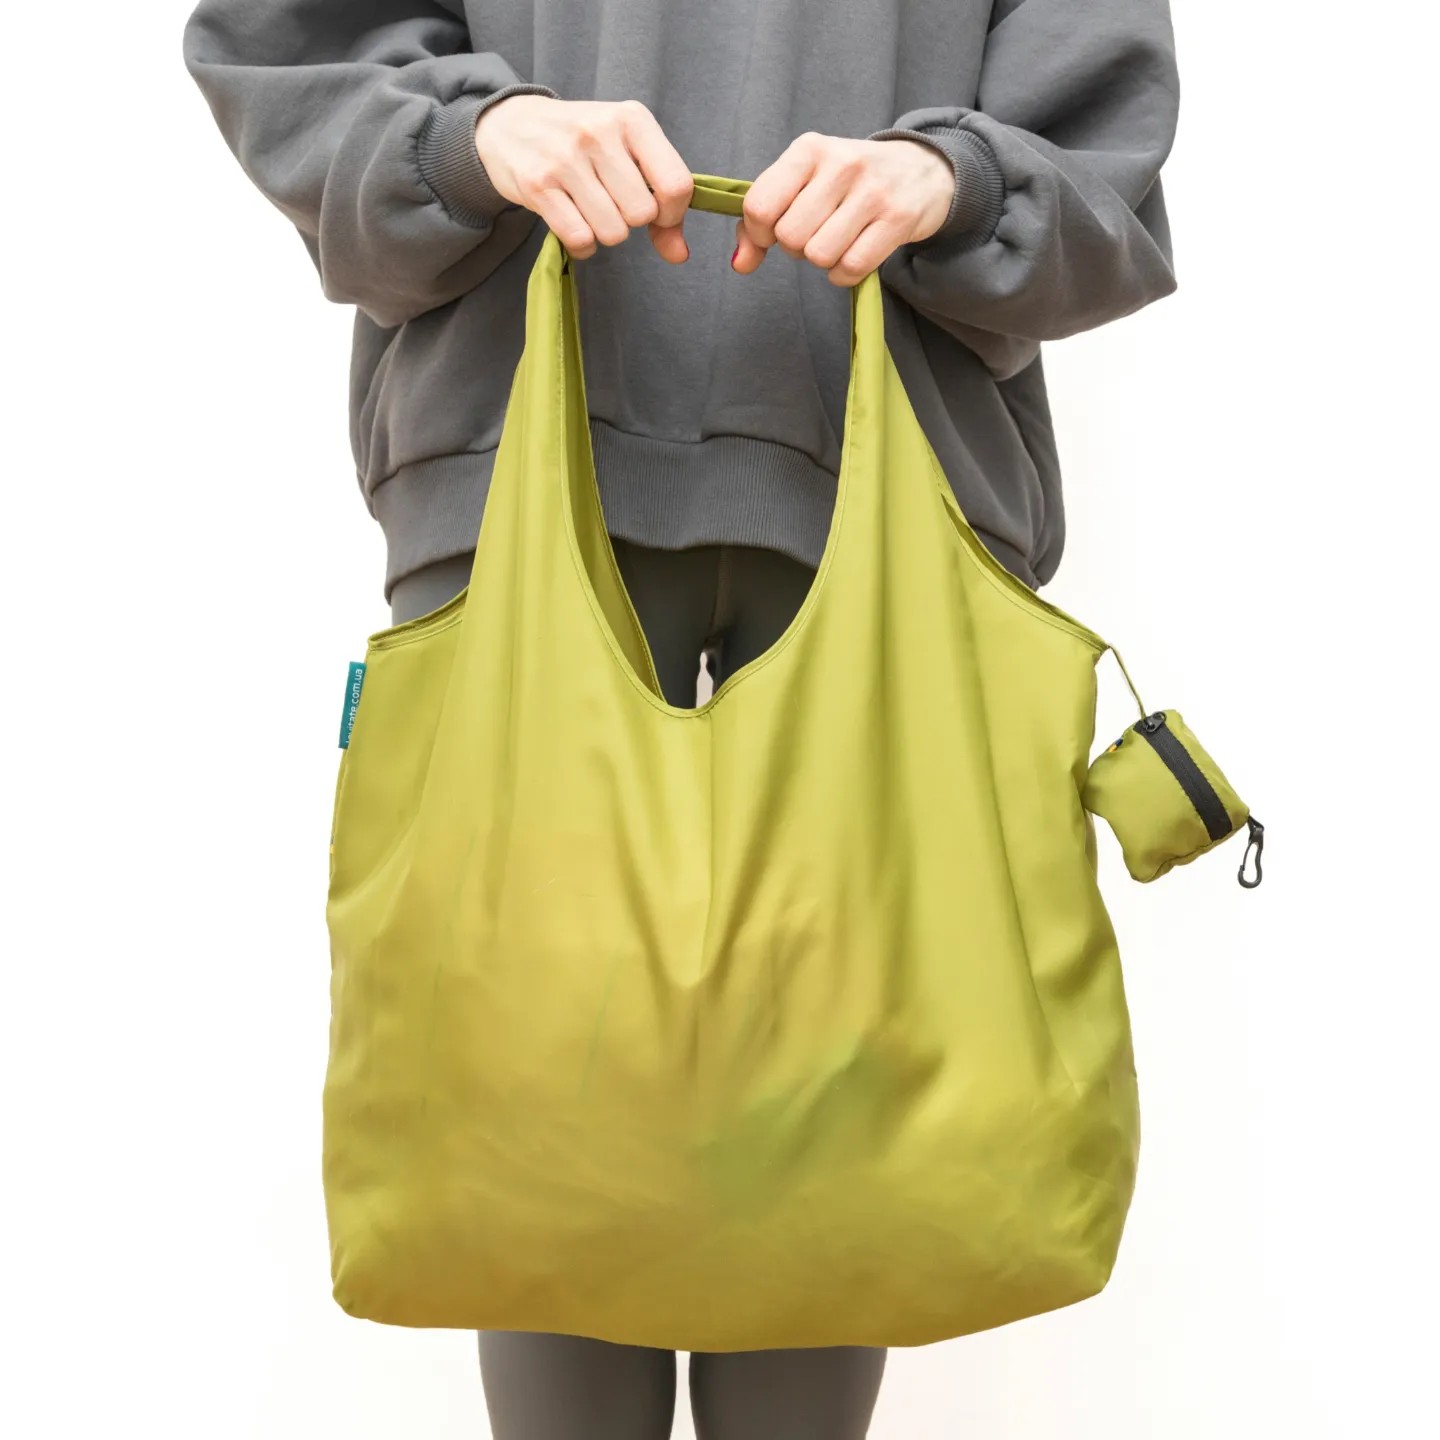 Shopper bag made from recycled plastic bottles ♻️, oliva